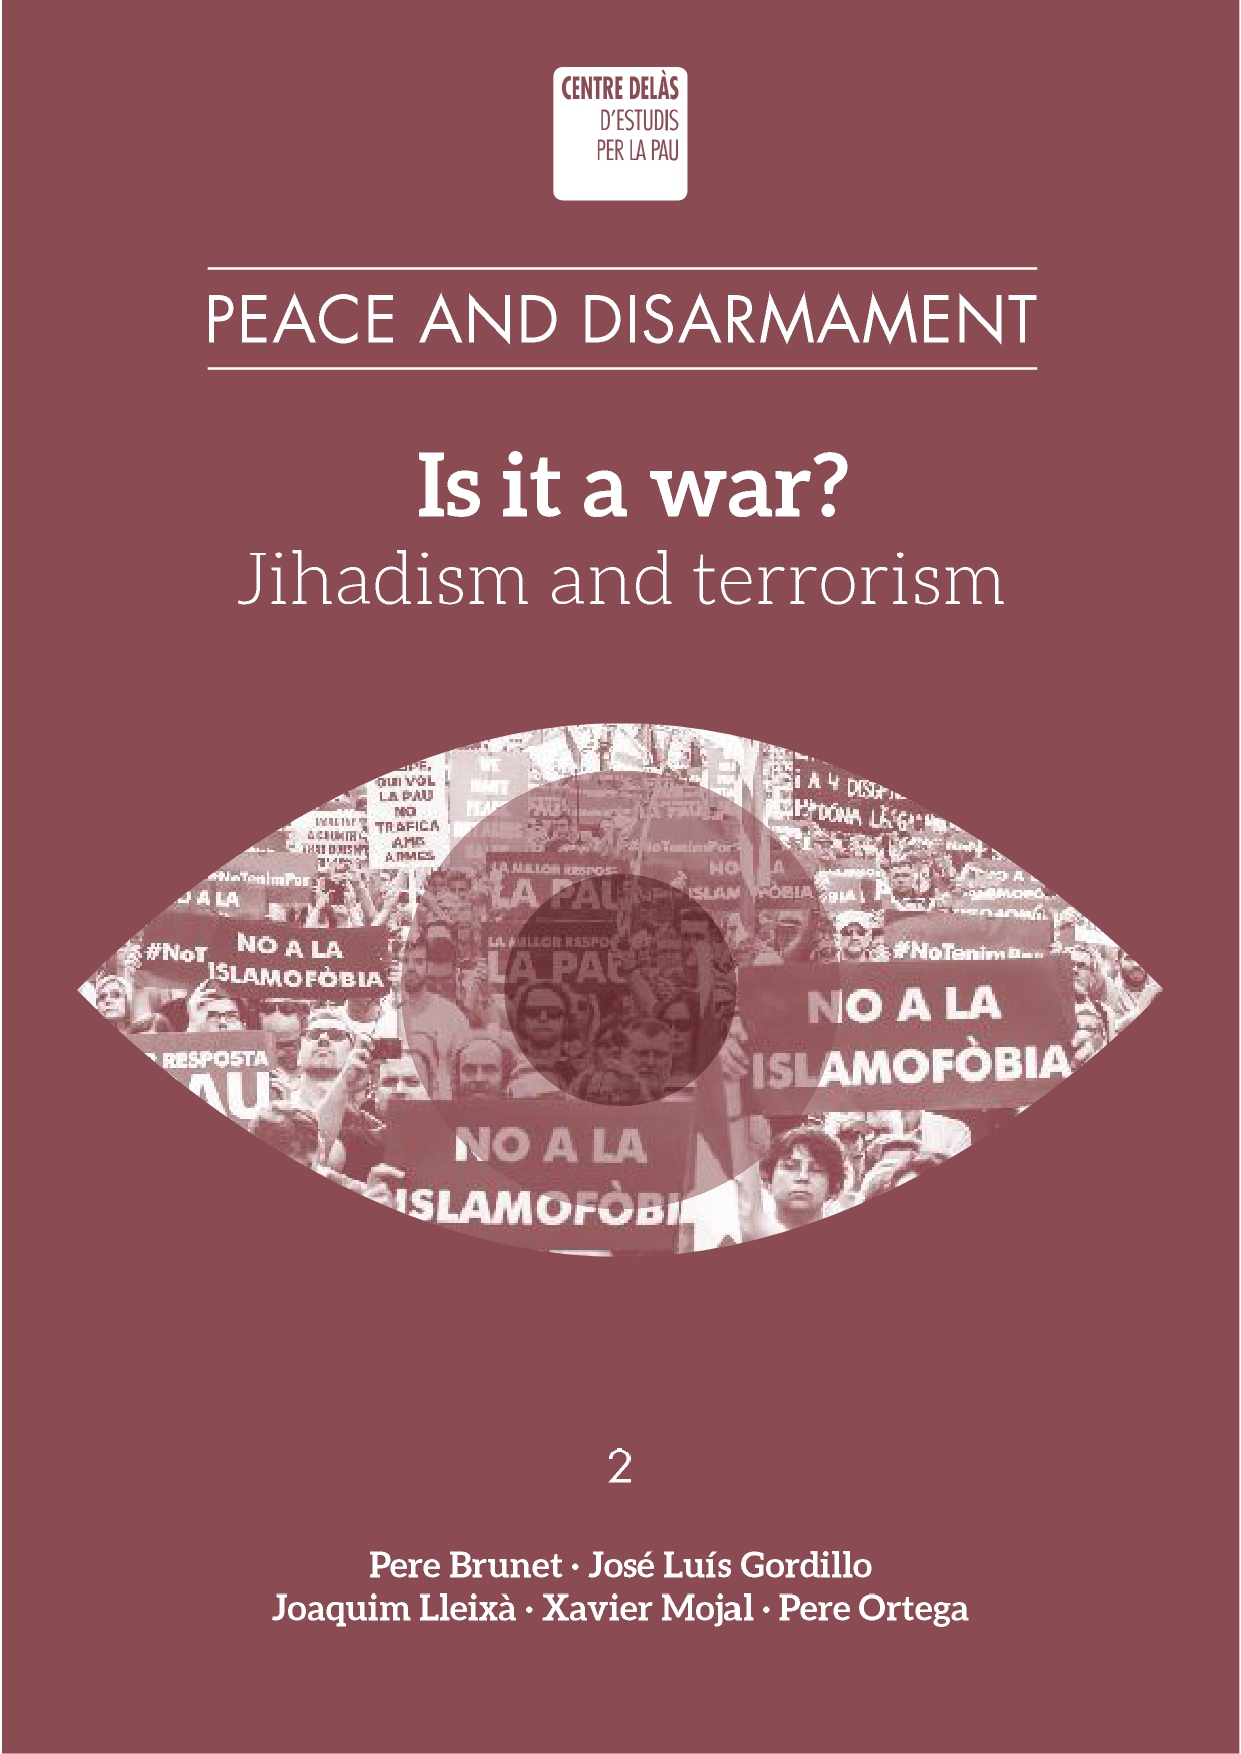 “Is it a war? Jihadism and terrorism”